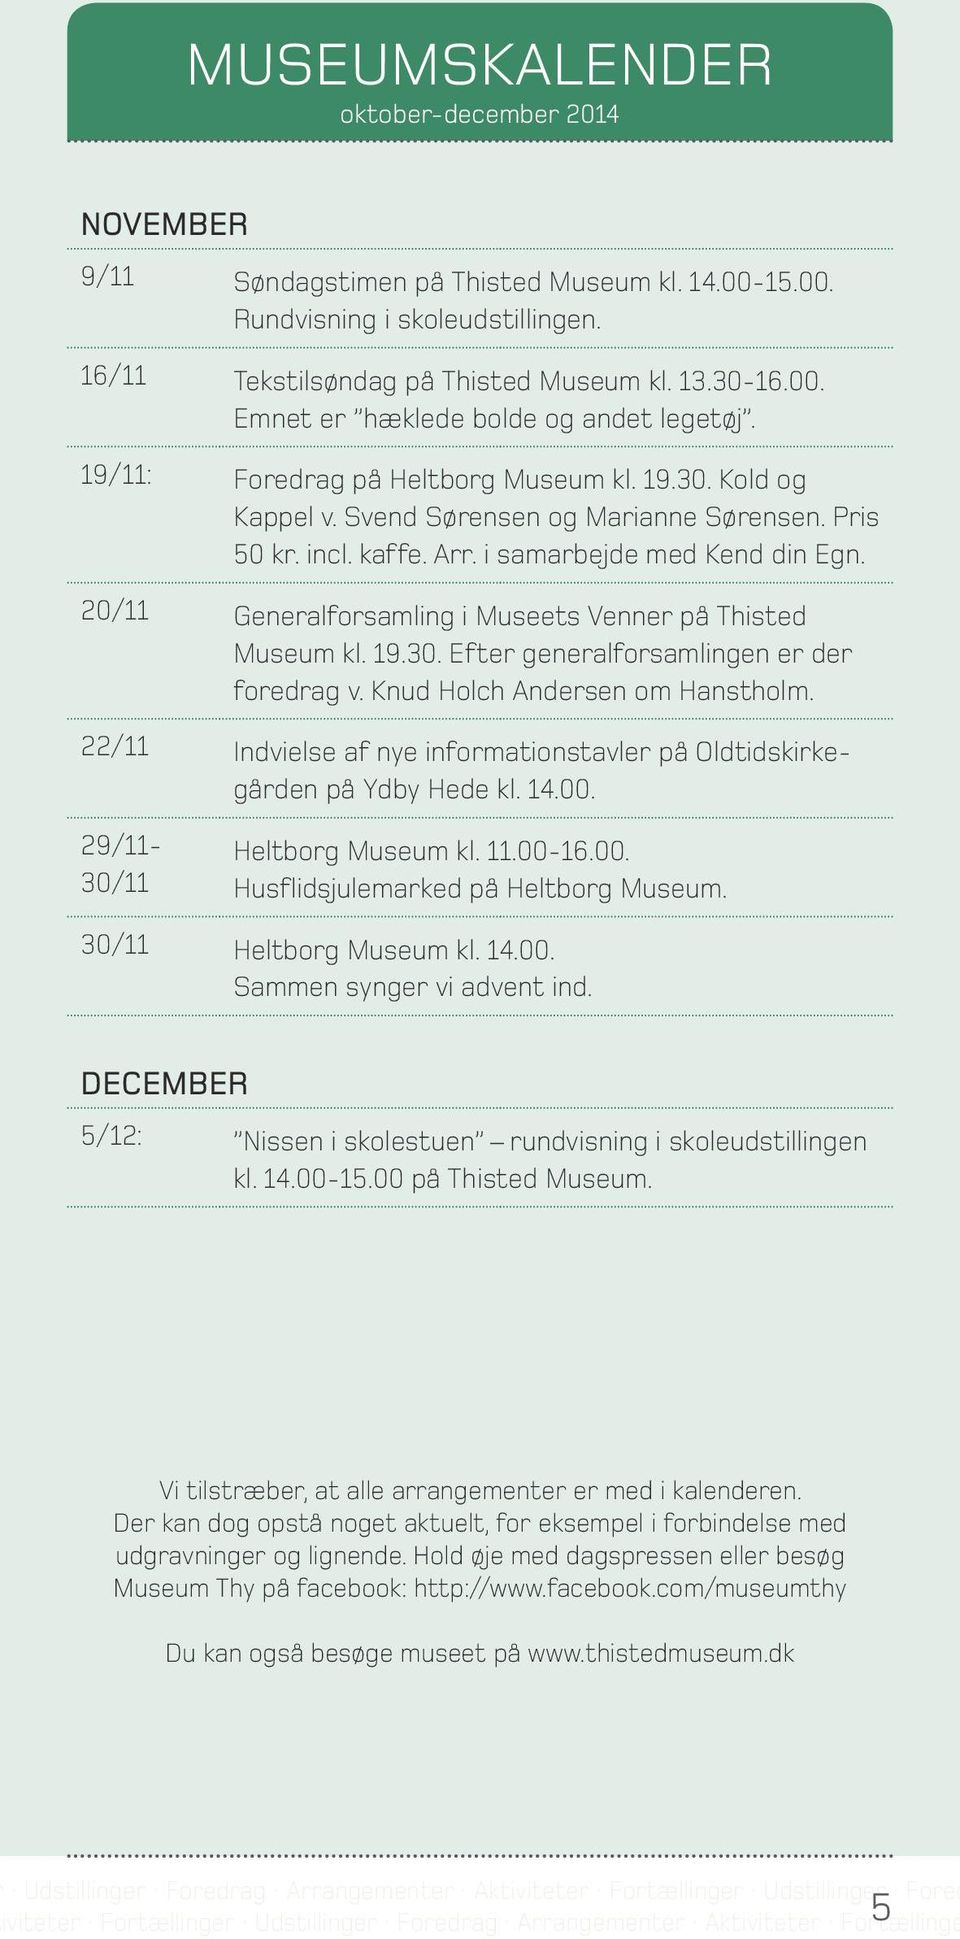 20/11 Generalforsamling i Museets Venner på Thisted Museum kl. 19.30. Efter generalforsamlingen er der foredrag v. Knud Holch Andersen om Hanstholm.